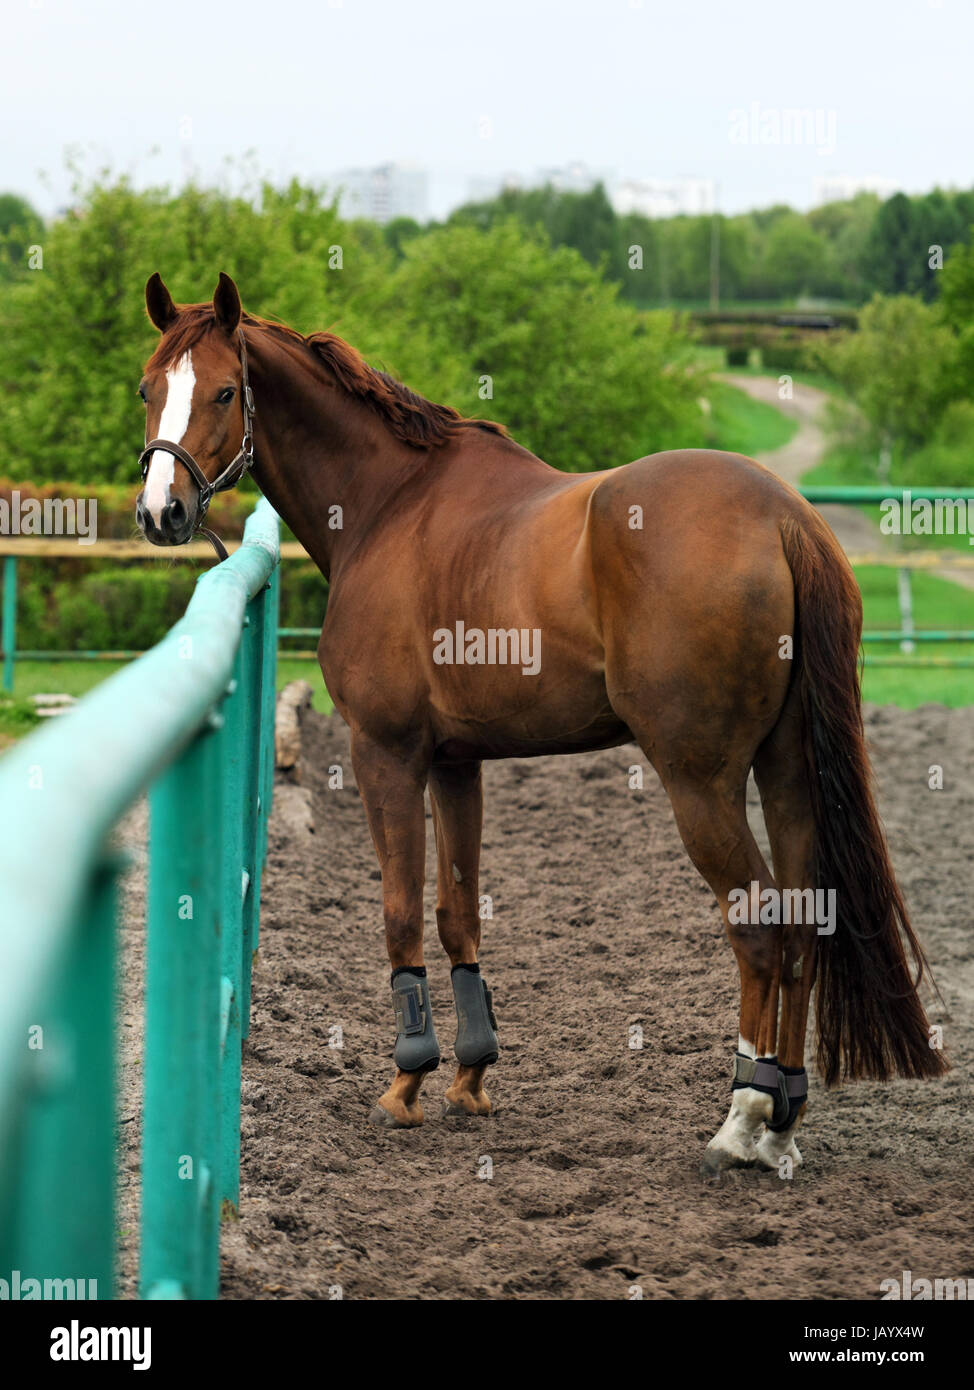 Race horse along a fence-line at a horse farm near Kiev, Ukraine Stock Photo